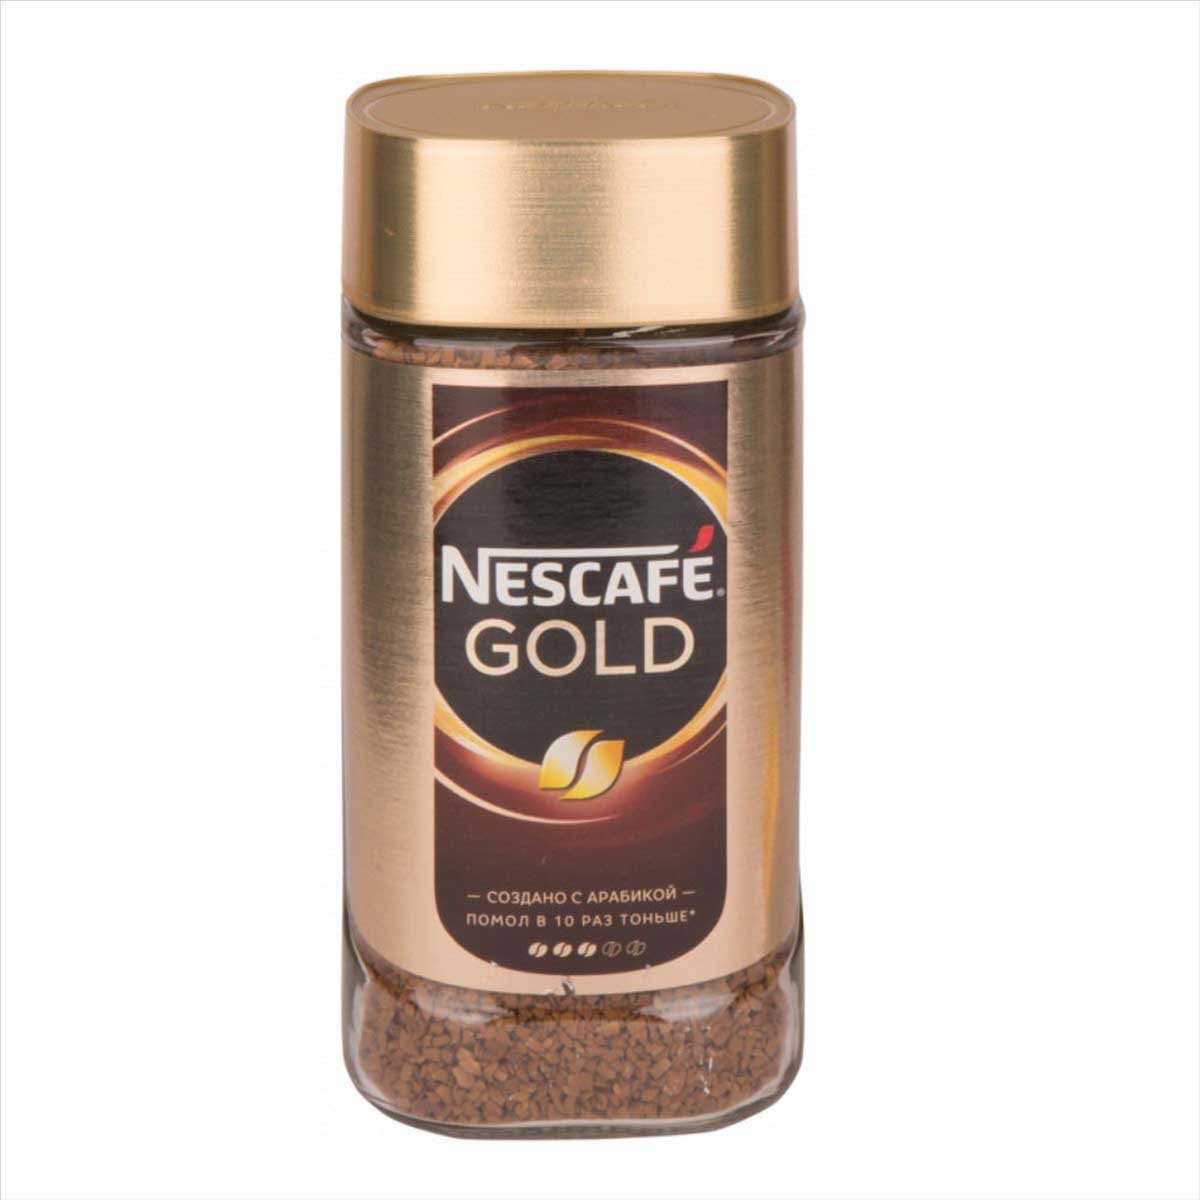 Кофе нескафе 190 грамм. Кофе Нескафе Голд 190г ст/б. Кофе Нескафе Голд 95 ст/б. Кофе растворимый Нескафе Голд 190г. Кофе "Nescafe" Голд 190г.